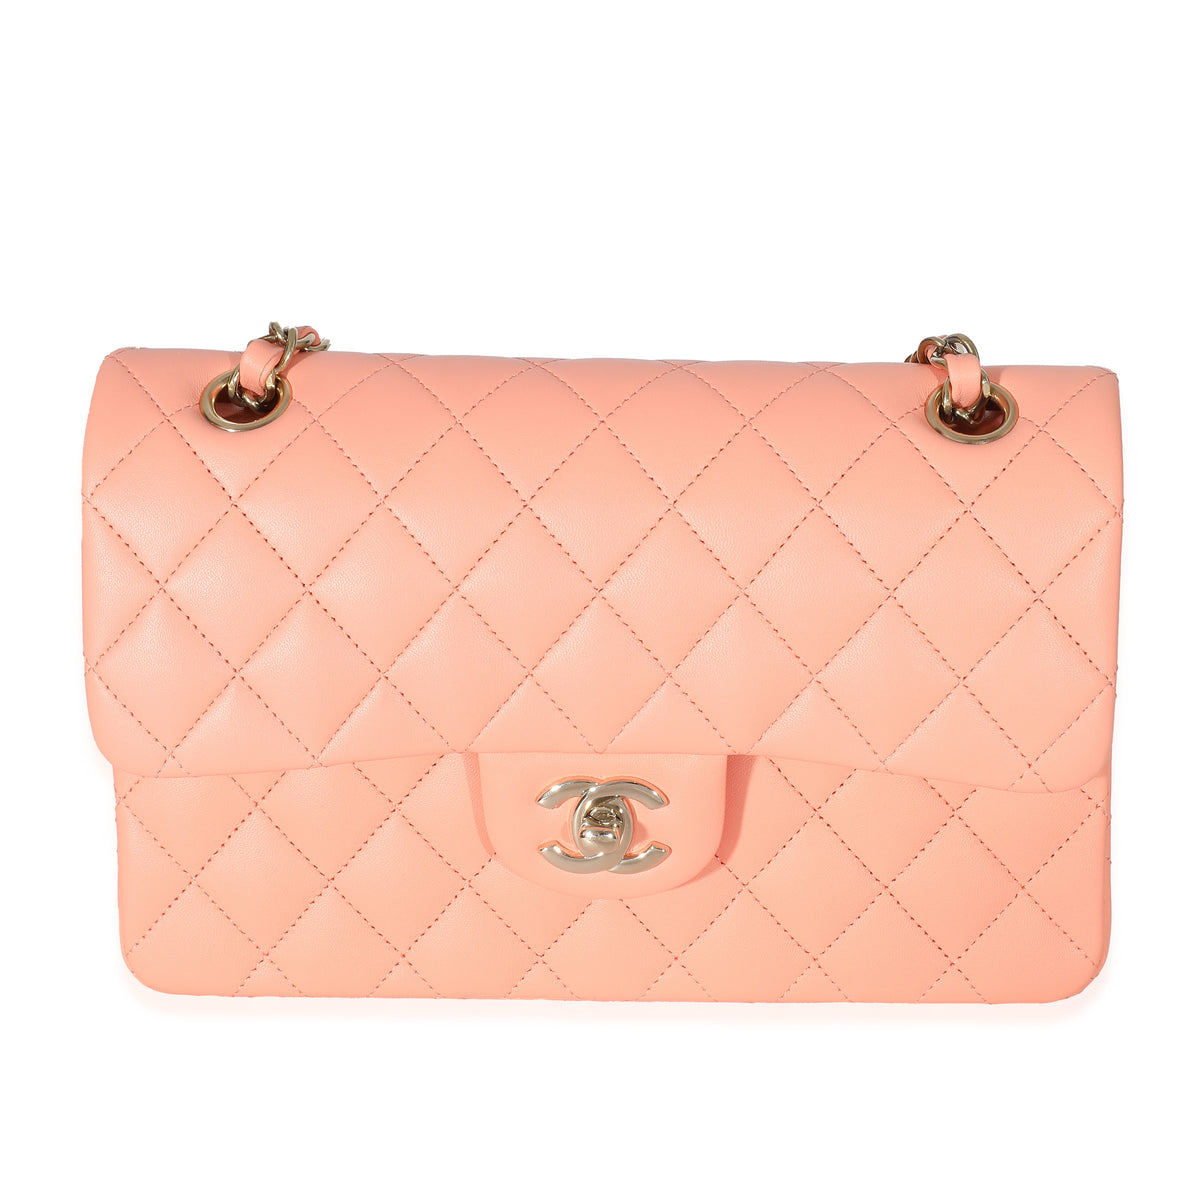 Chanel Orange Leather Mini Flap - ShopStyle Shoulder Bags